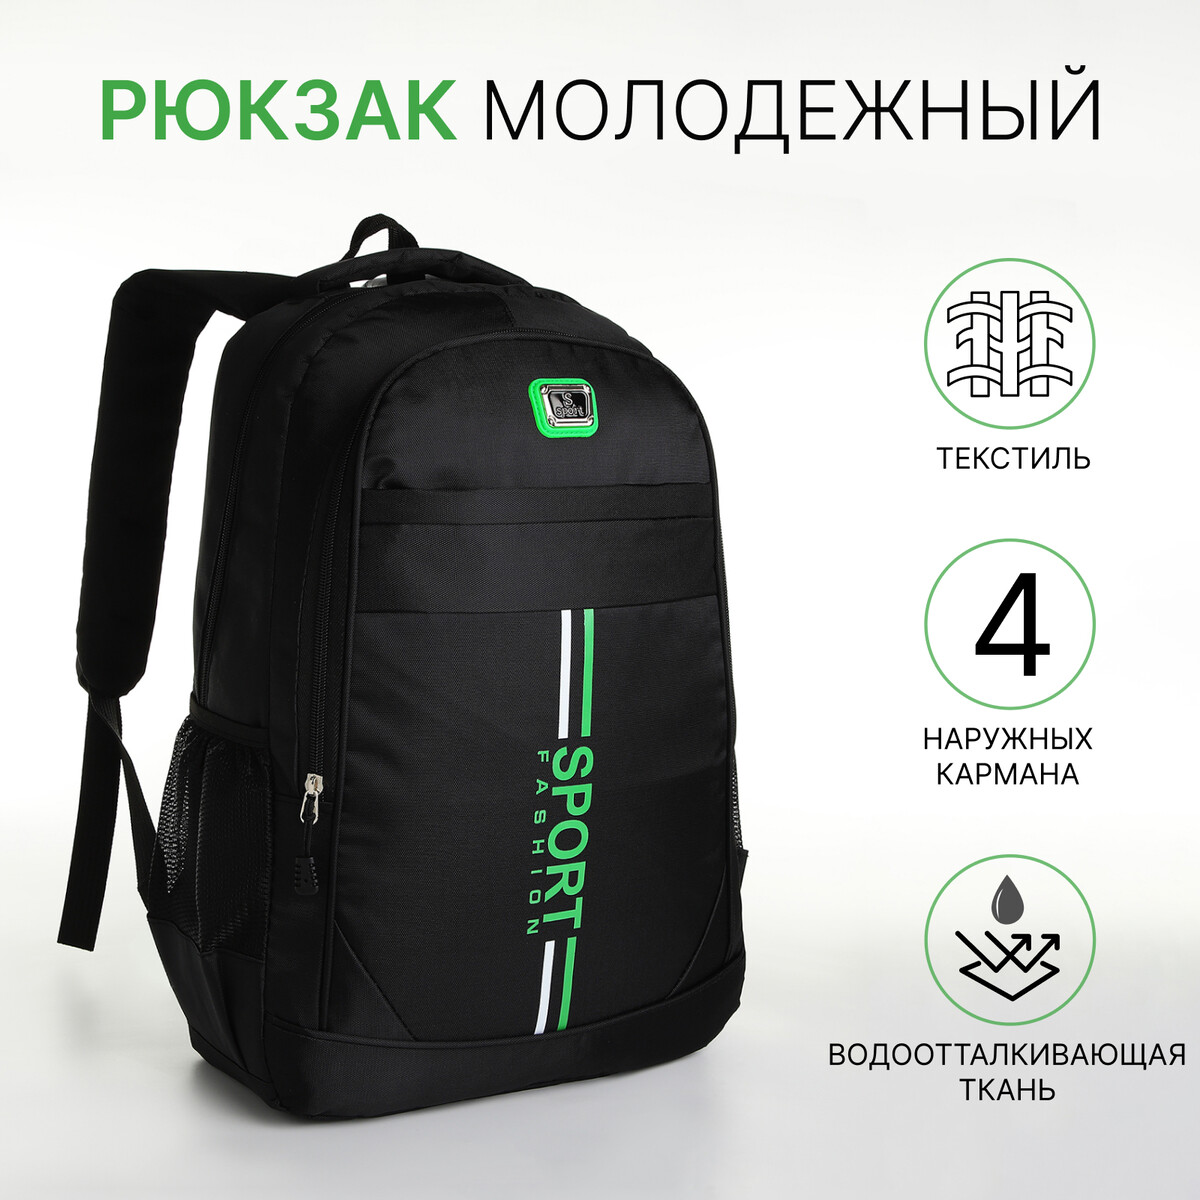 Рюкзак молодежный на молнии, 4 кармана, цвет черный/зеленый рюкзак молодежный из текстиля на молнии 2 кармана зеленый